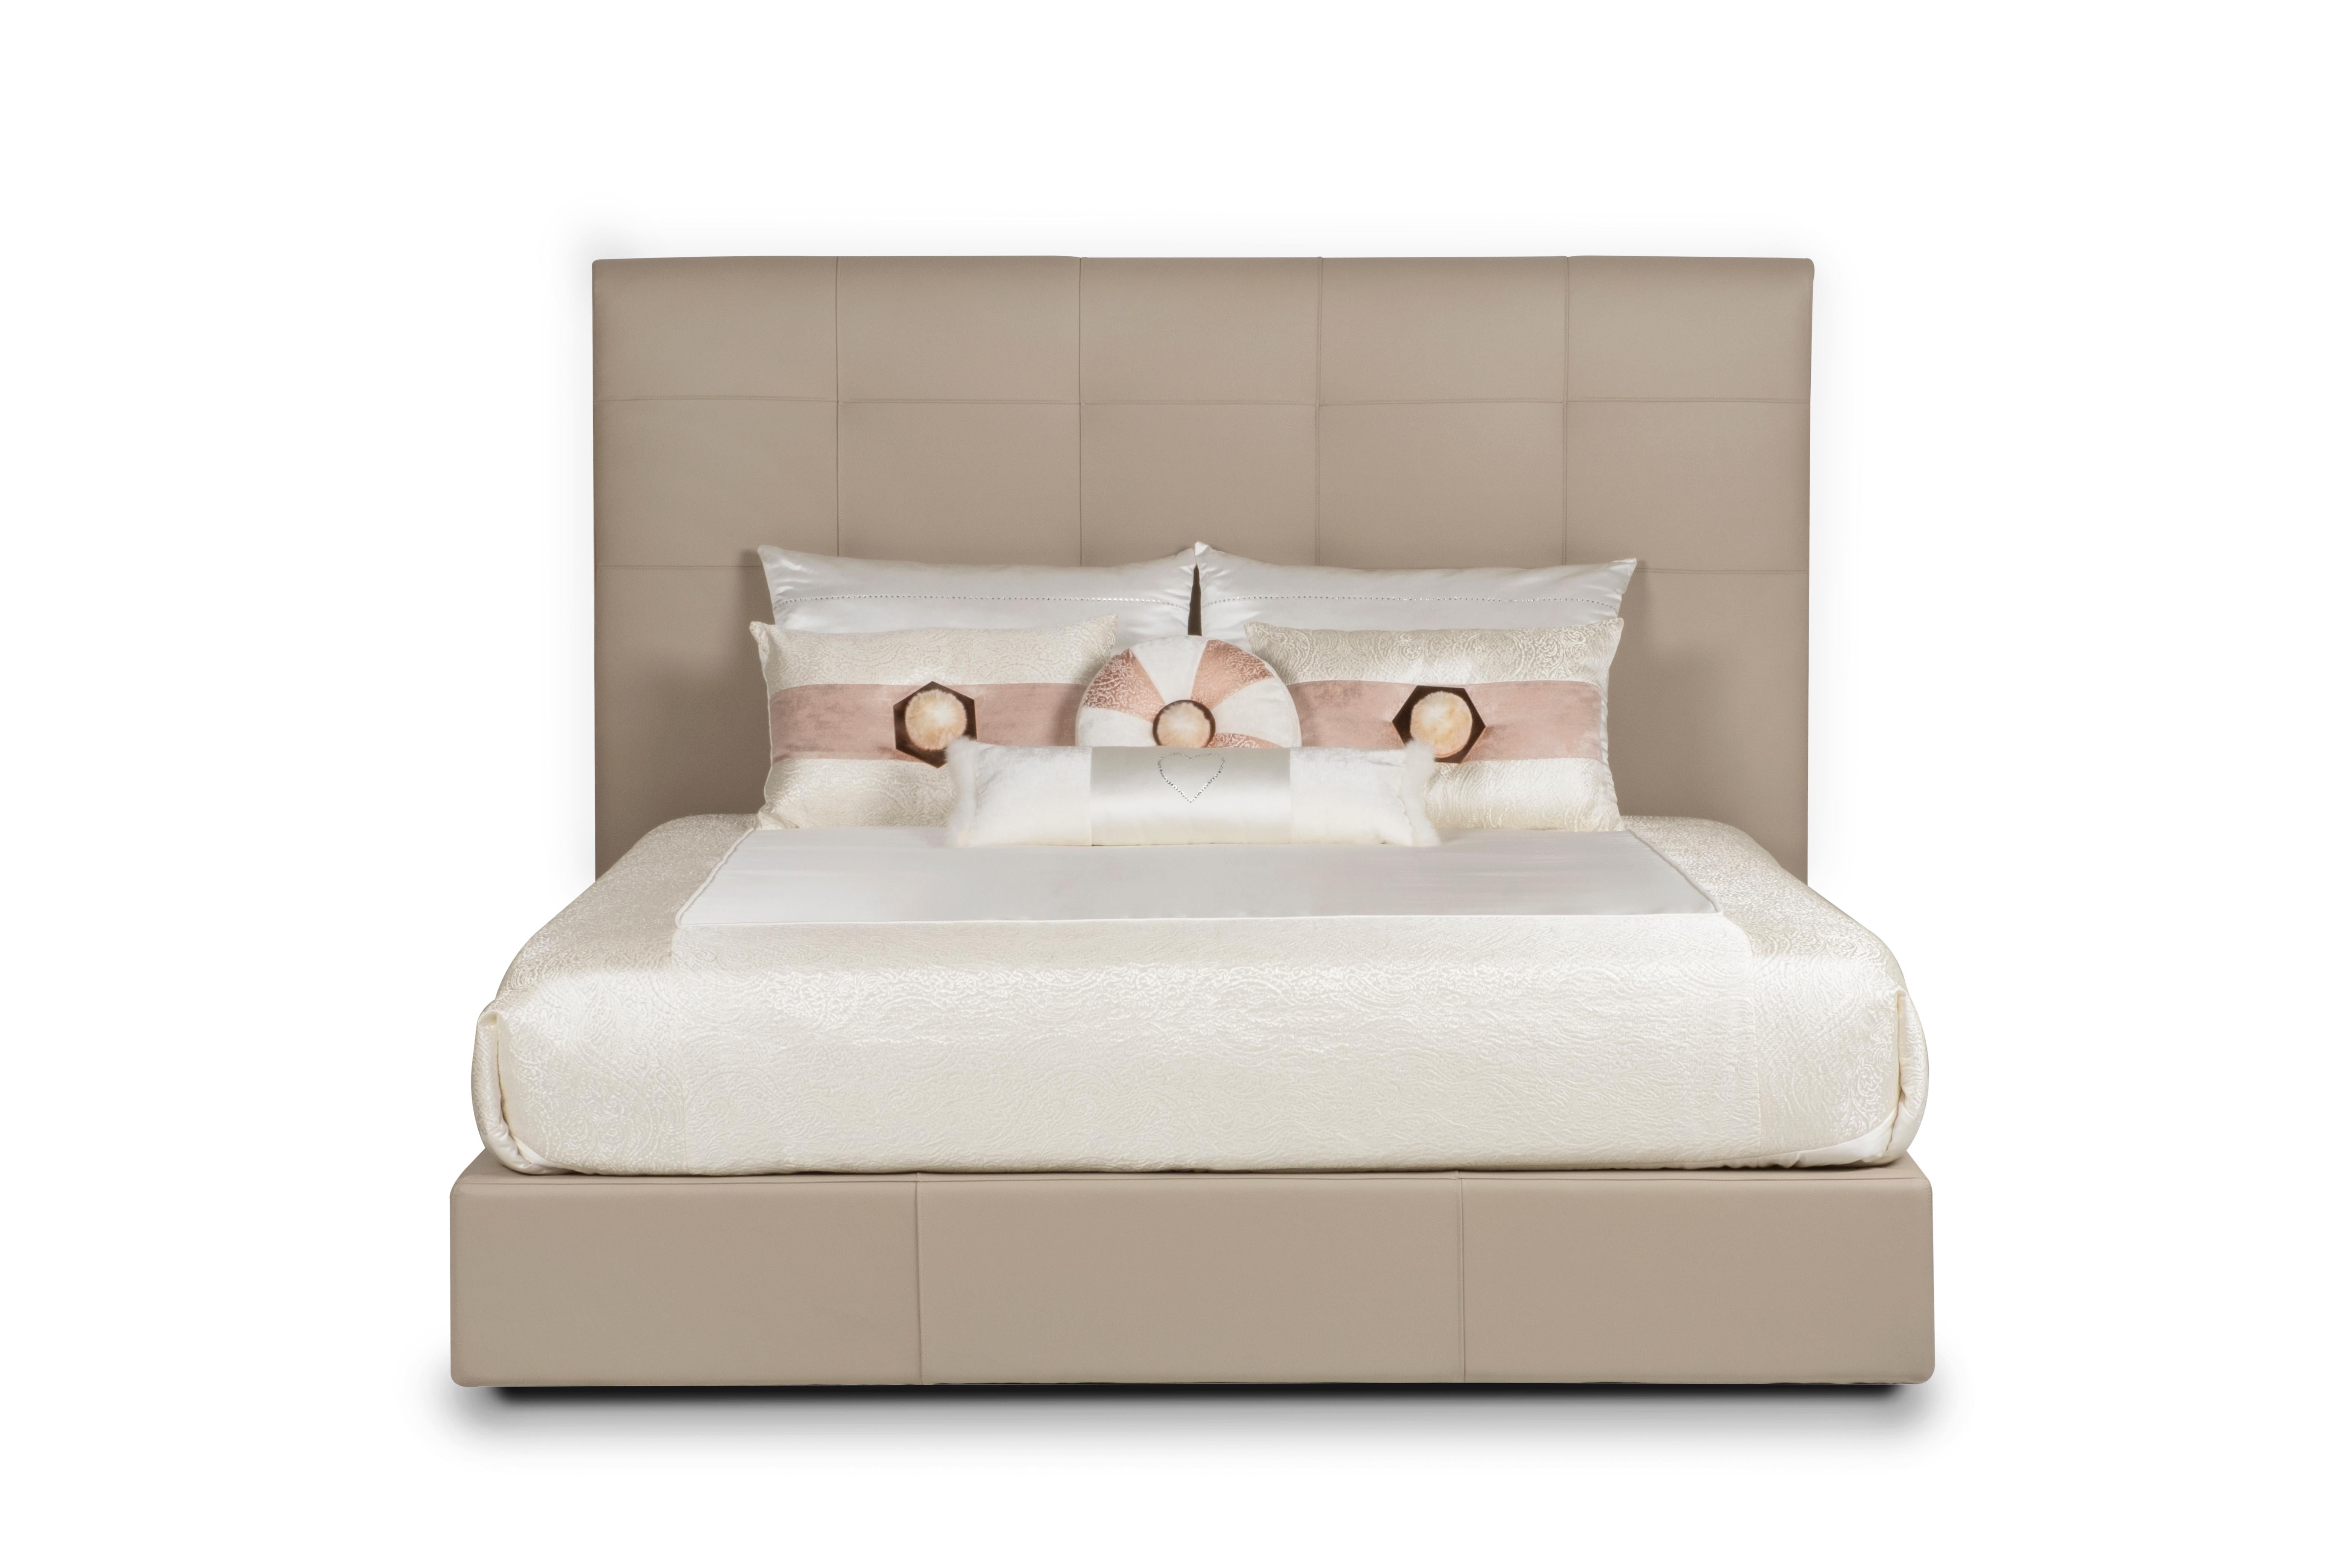 Midnight Bed, Collection S, fabriqué à la main au Portugal - Europe by GF Modern.

Midnight est un lit élégant recouvert de cuir italien beige de haute qualité. Il a été conçu pour allier le confort moderne à des détails élégants. Le cadre de la